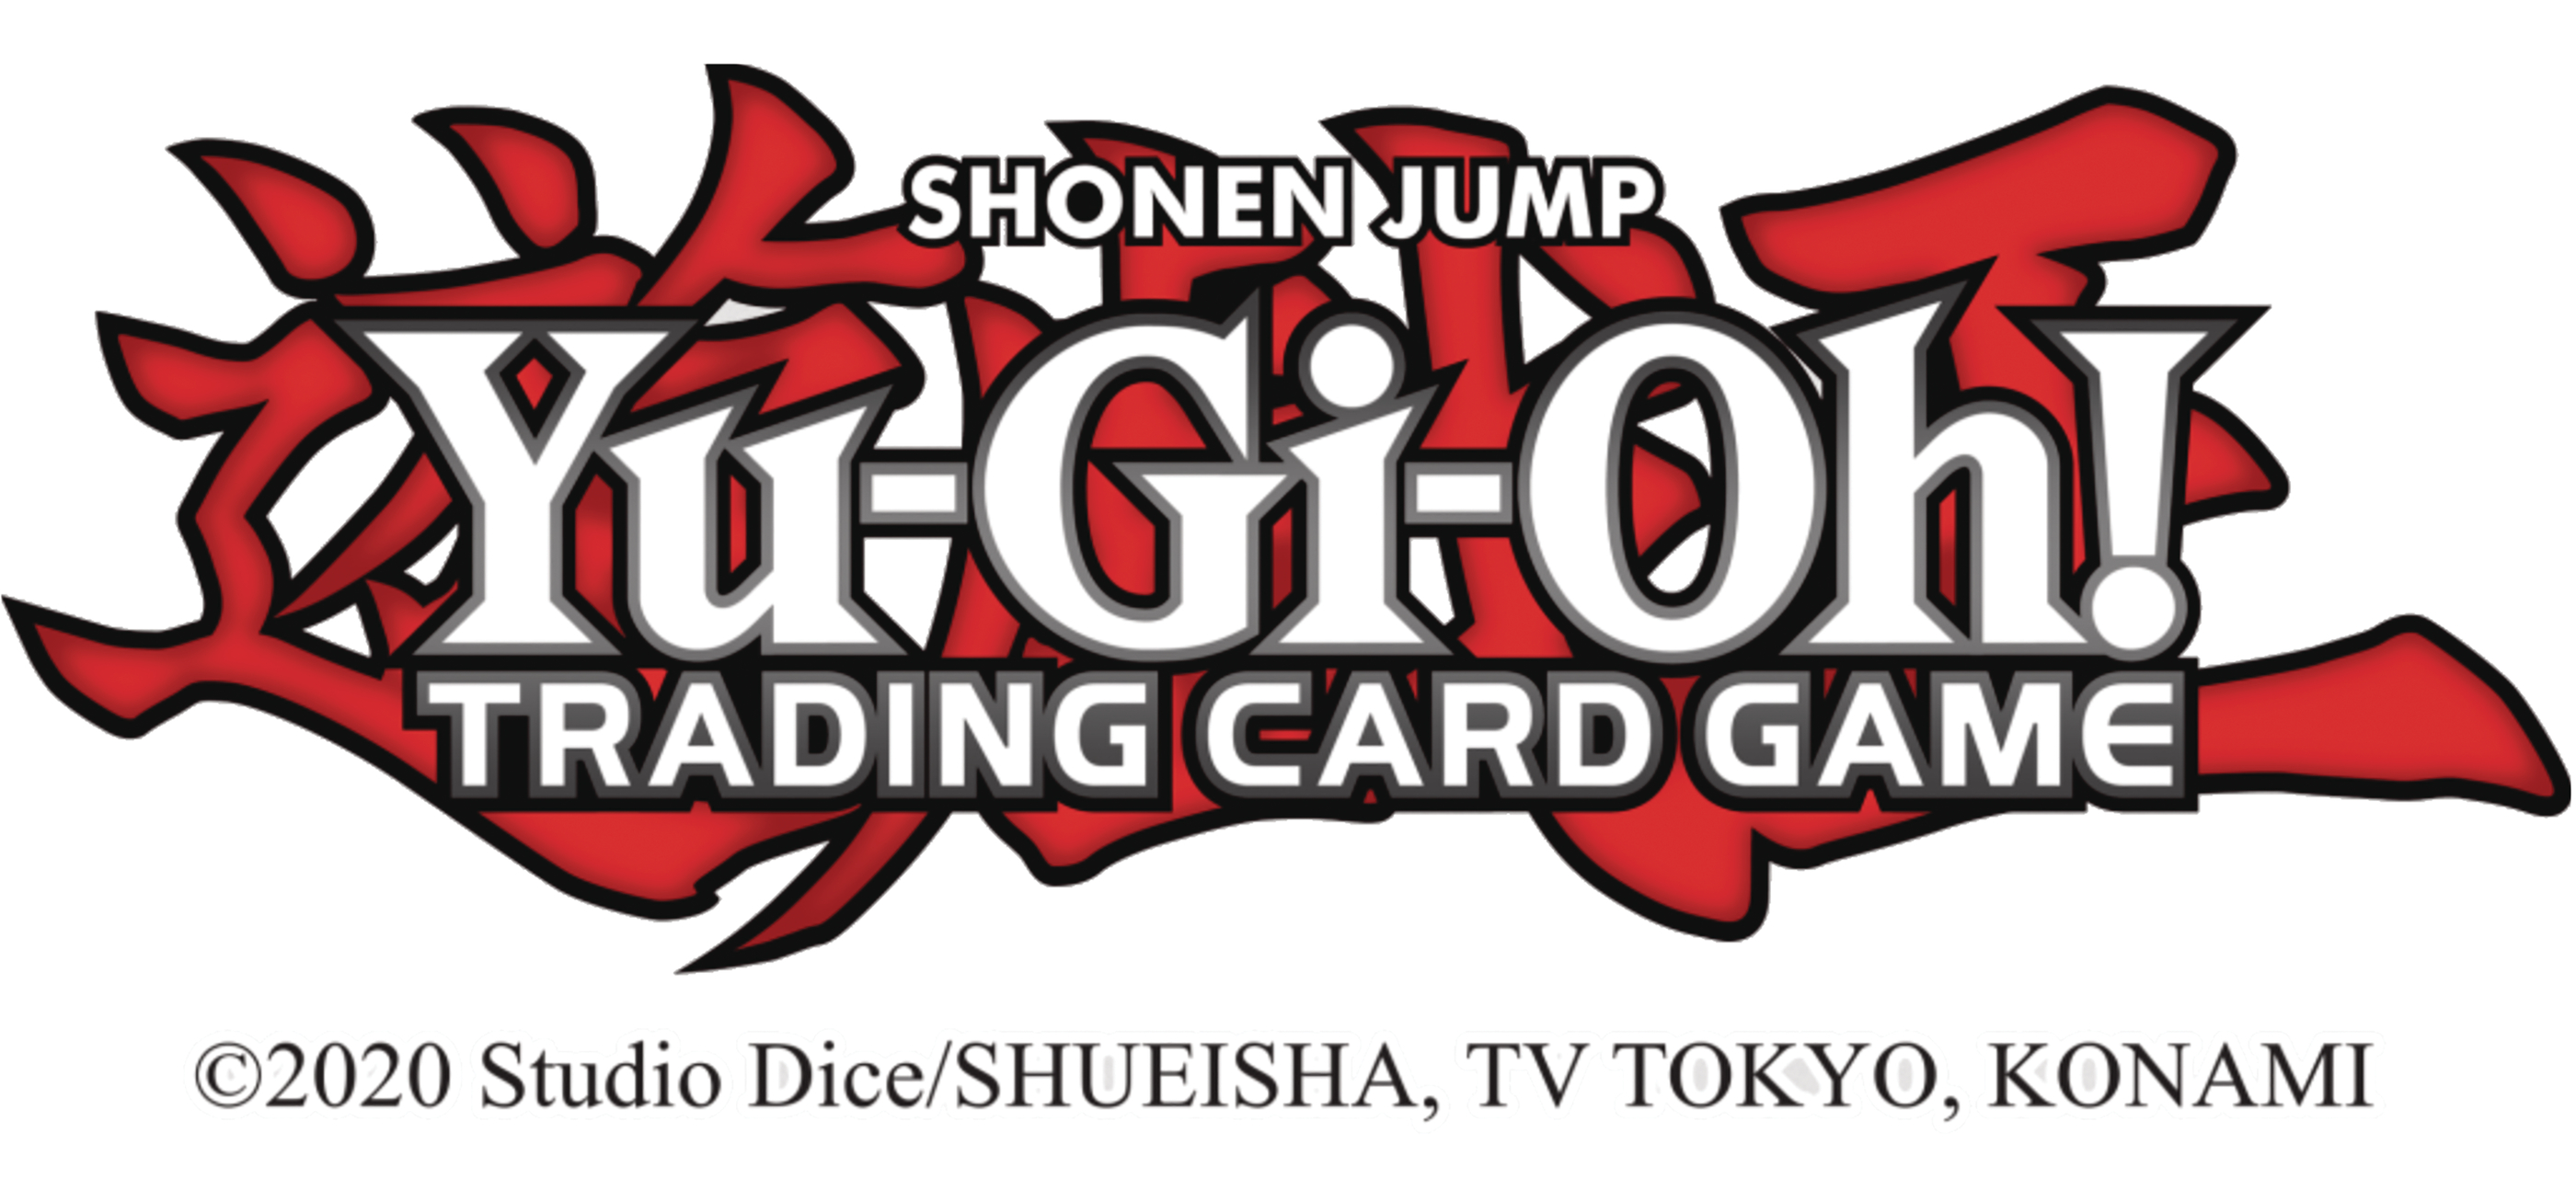 Yu-Gi-Oh! TCG Kuriboh Kollection Card Case